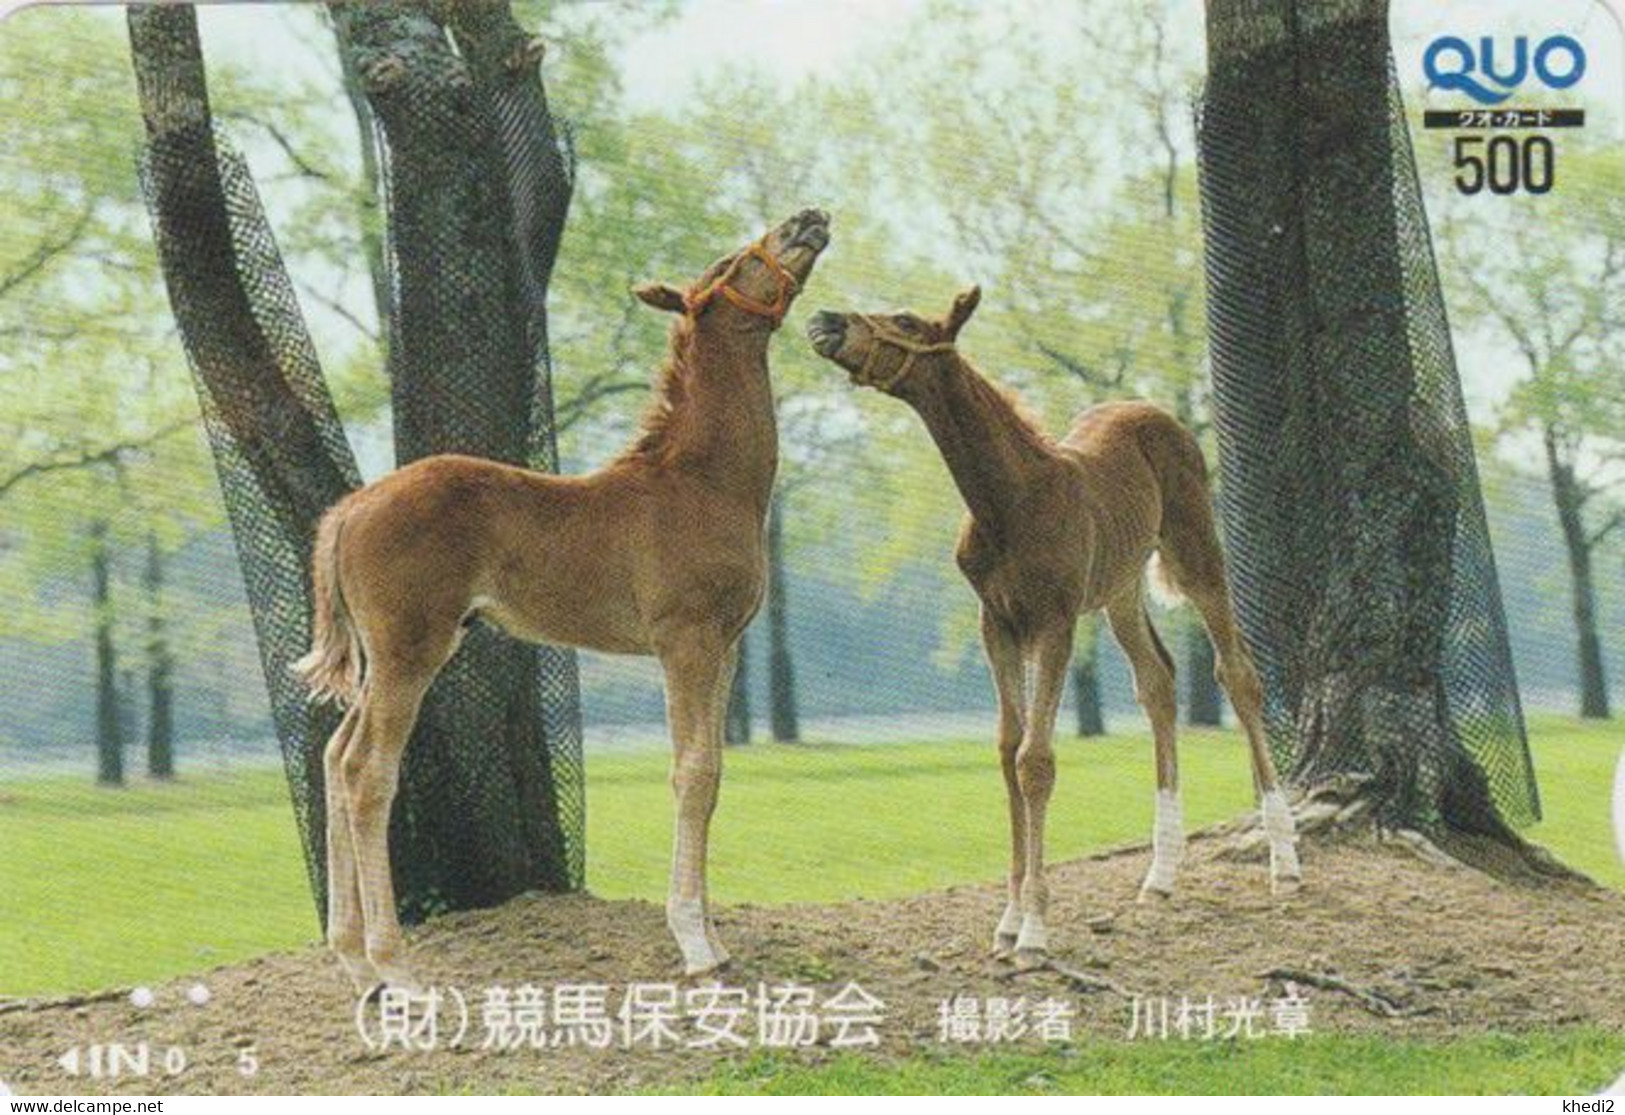 Carte Prépayée JAPON - ANIMAL - CHEVAL Chevaux / Poulain - HORSE JAPAN Prepaid Quo Card - PFERD - BE 412 - Caballos